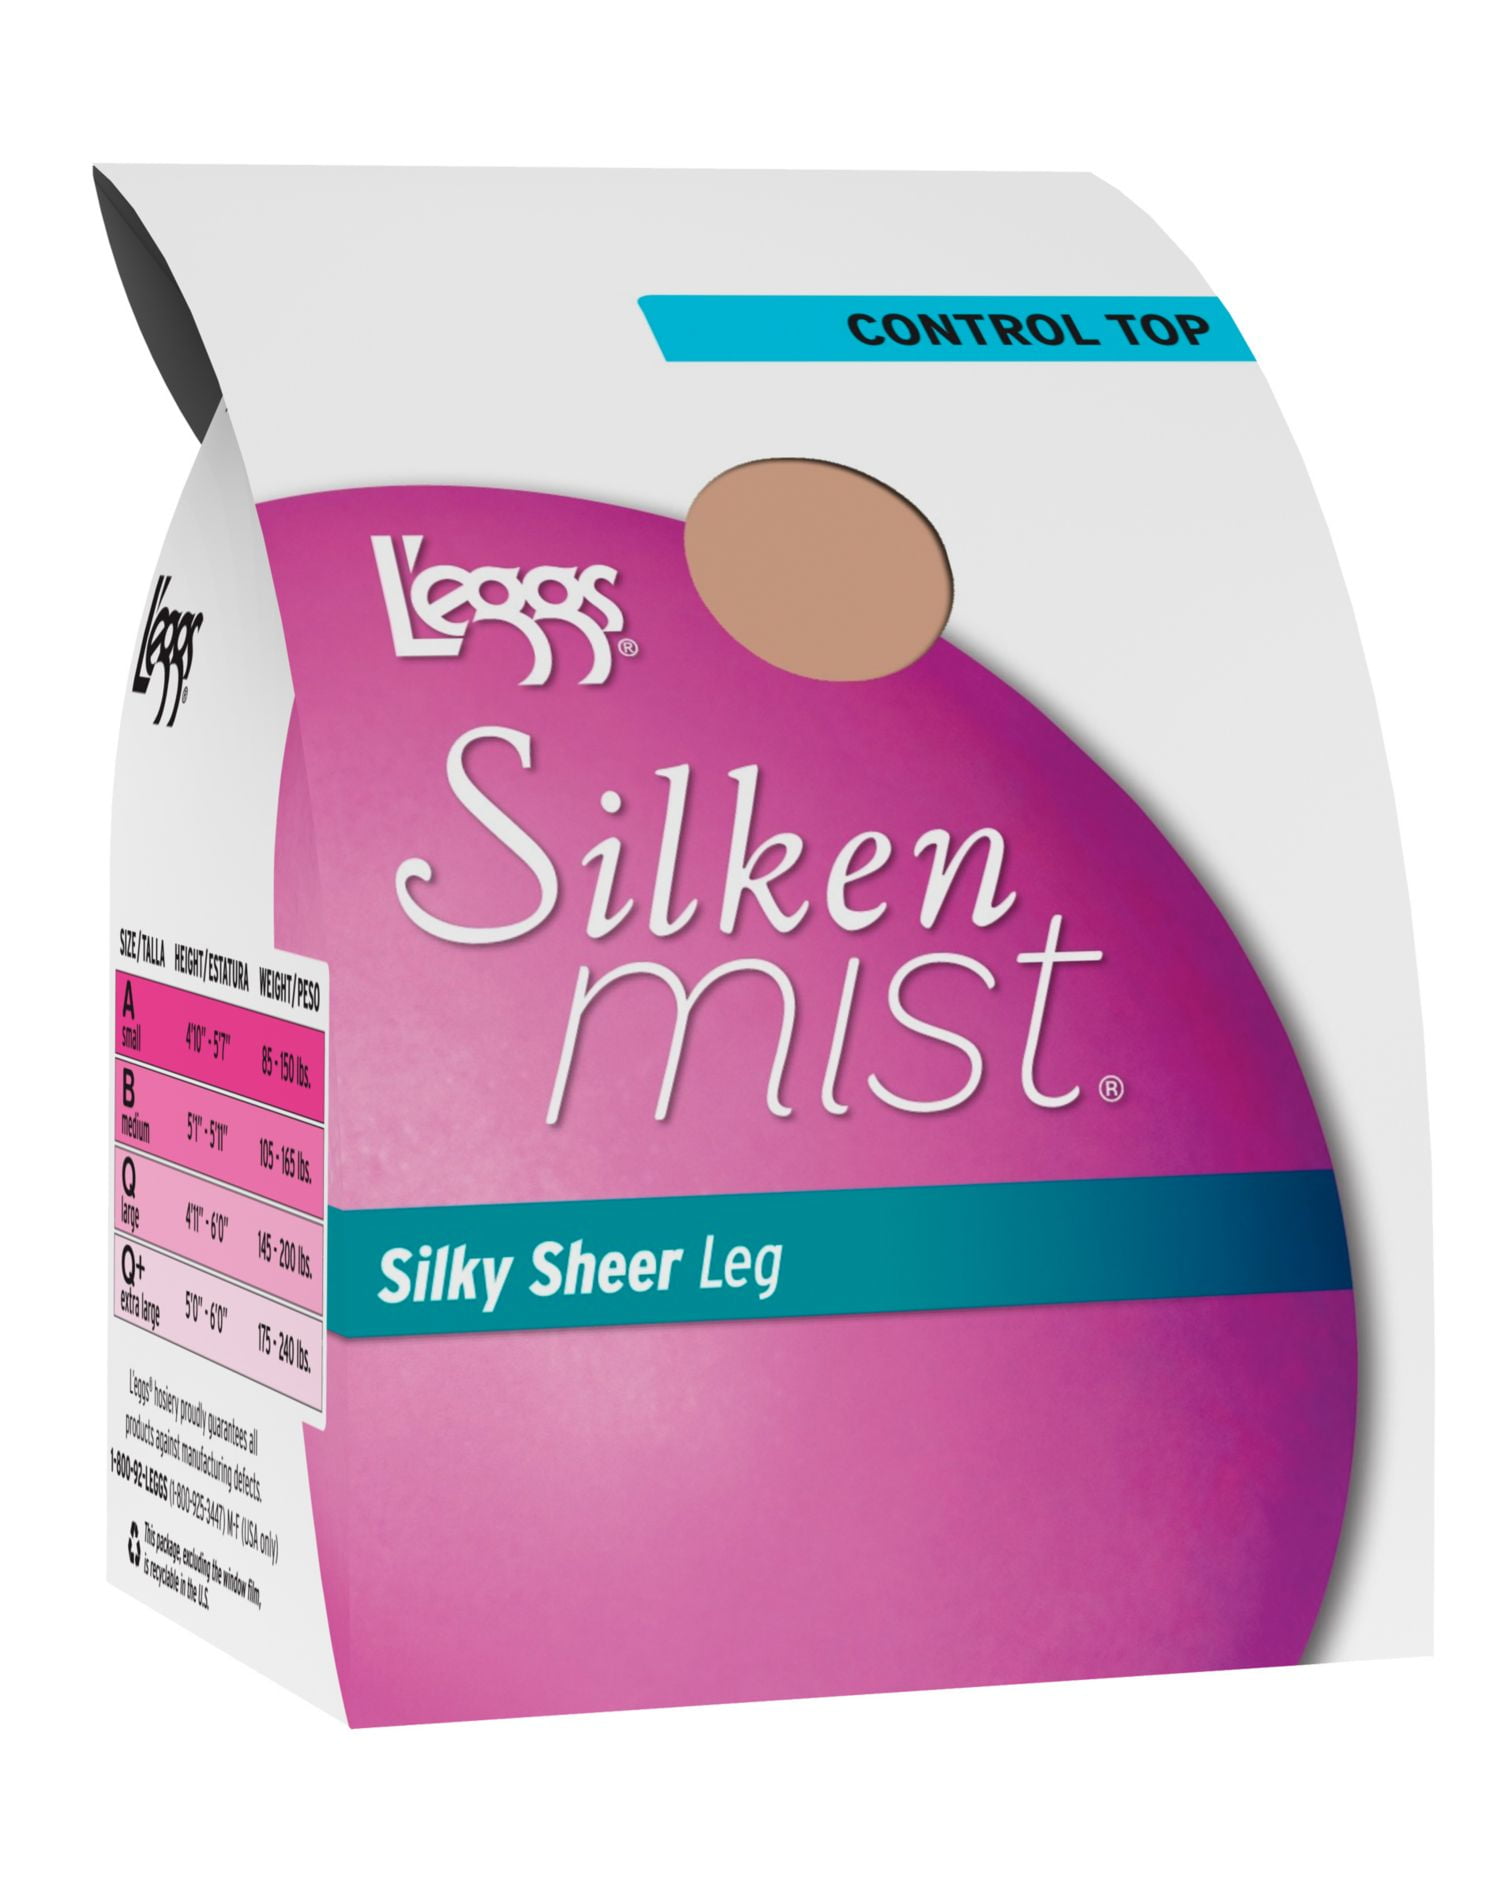  L'EGGS Silken Mist Regular Control Top ST - 20100